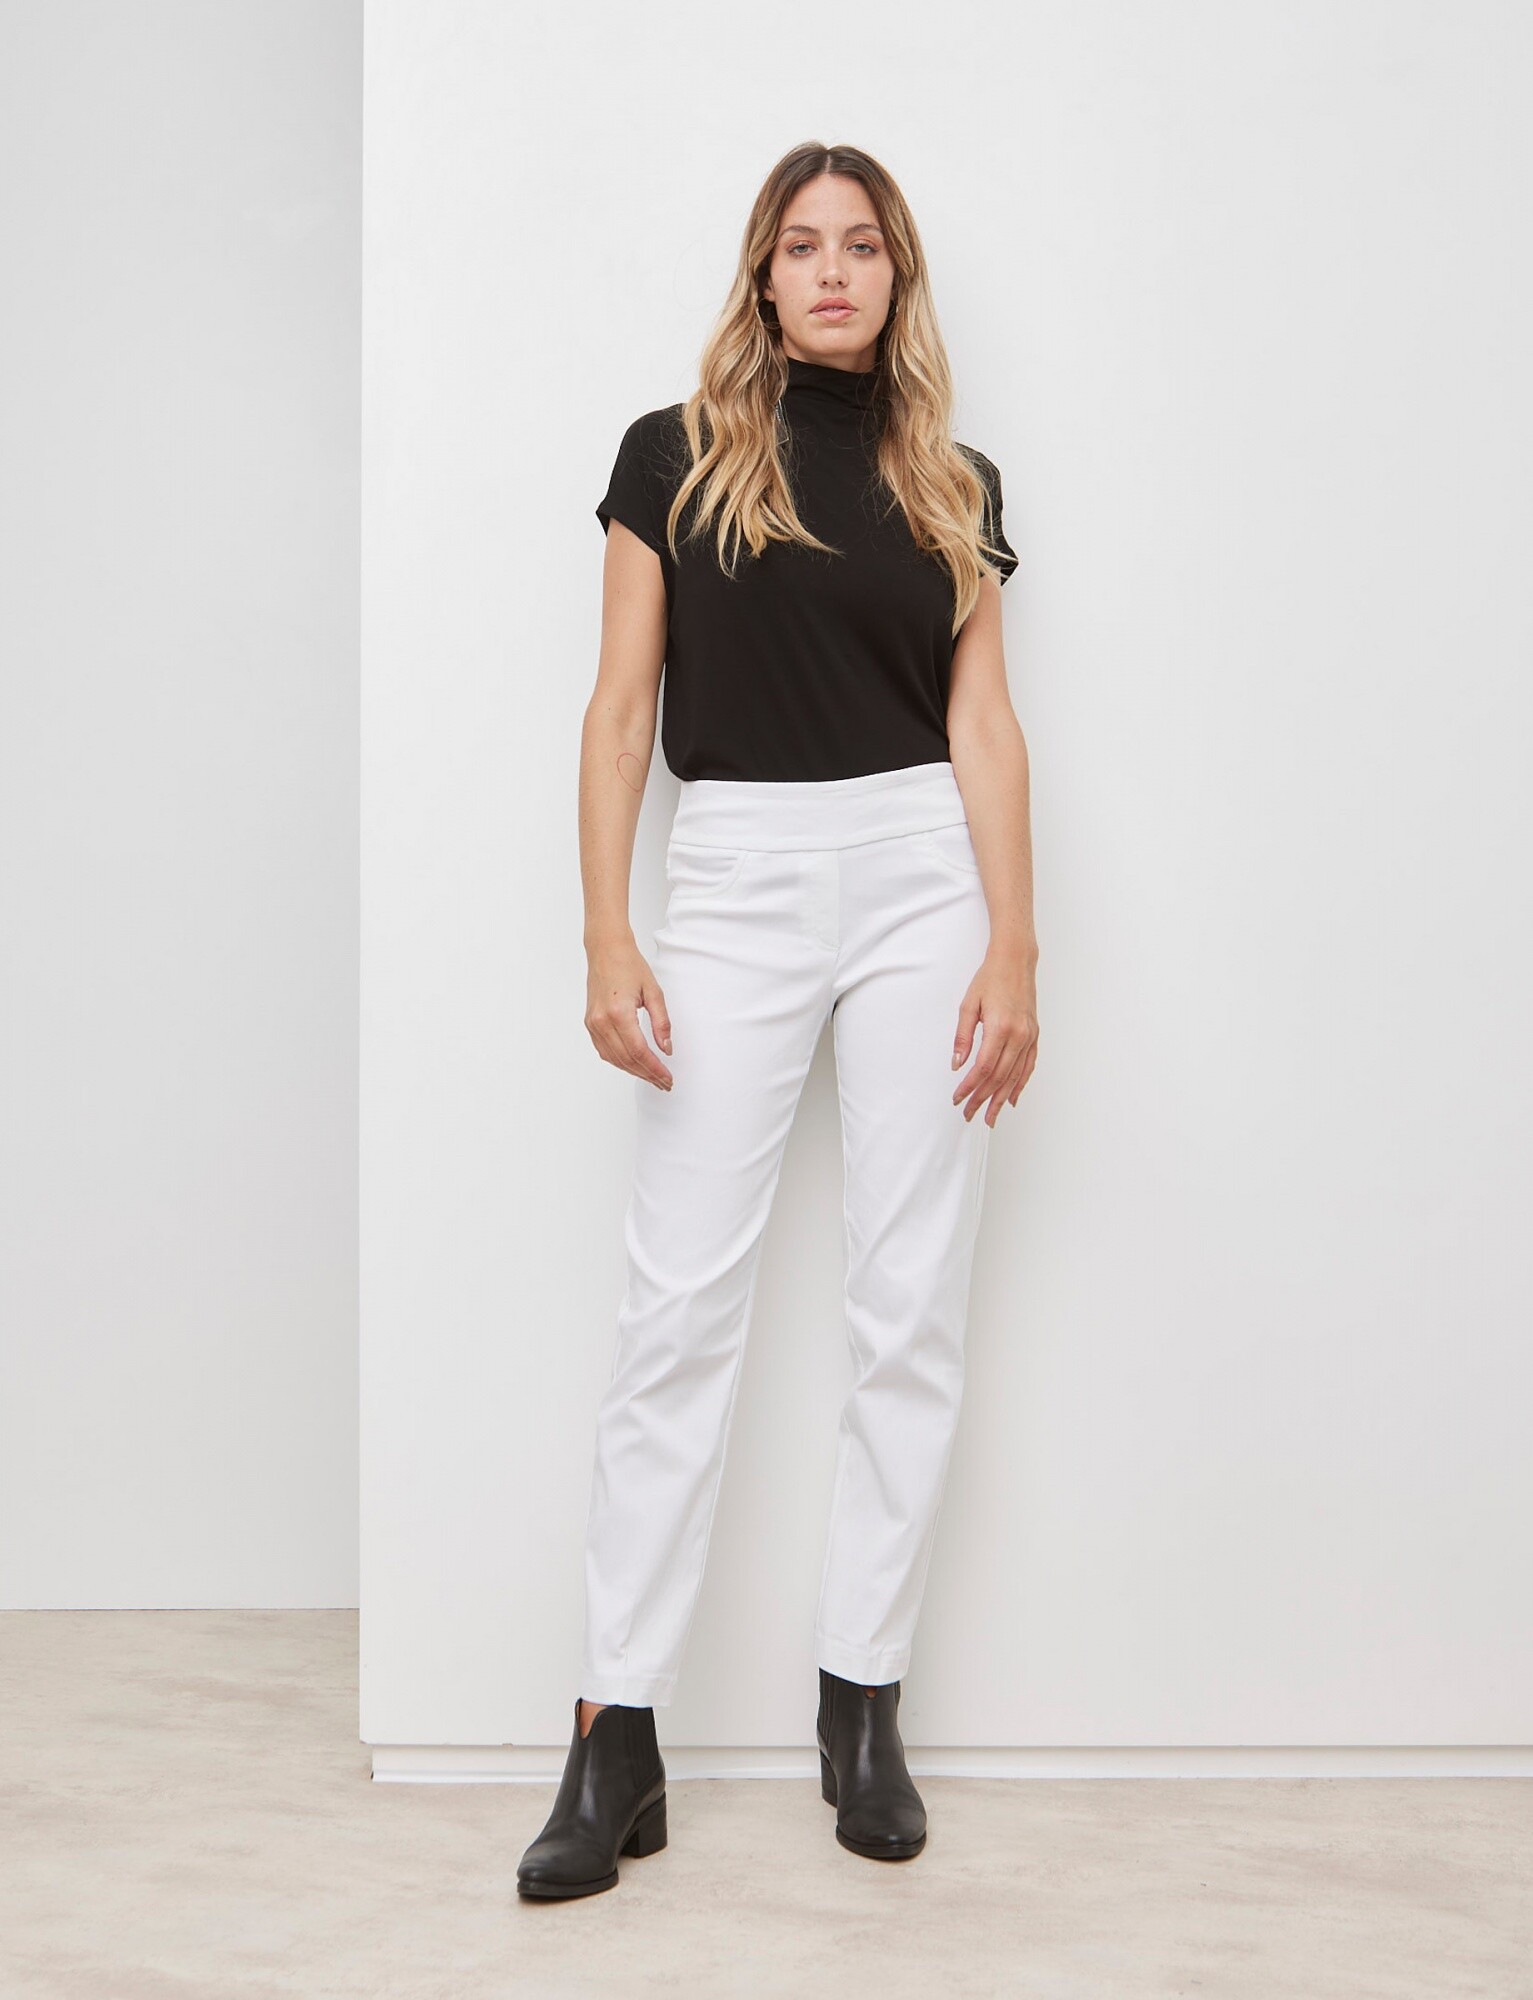 Pantalon Recto - Blanco — LA OPERA